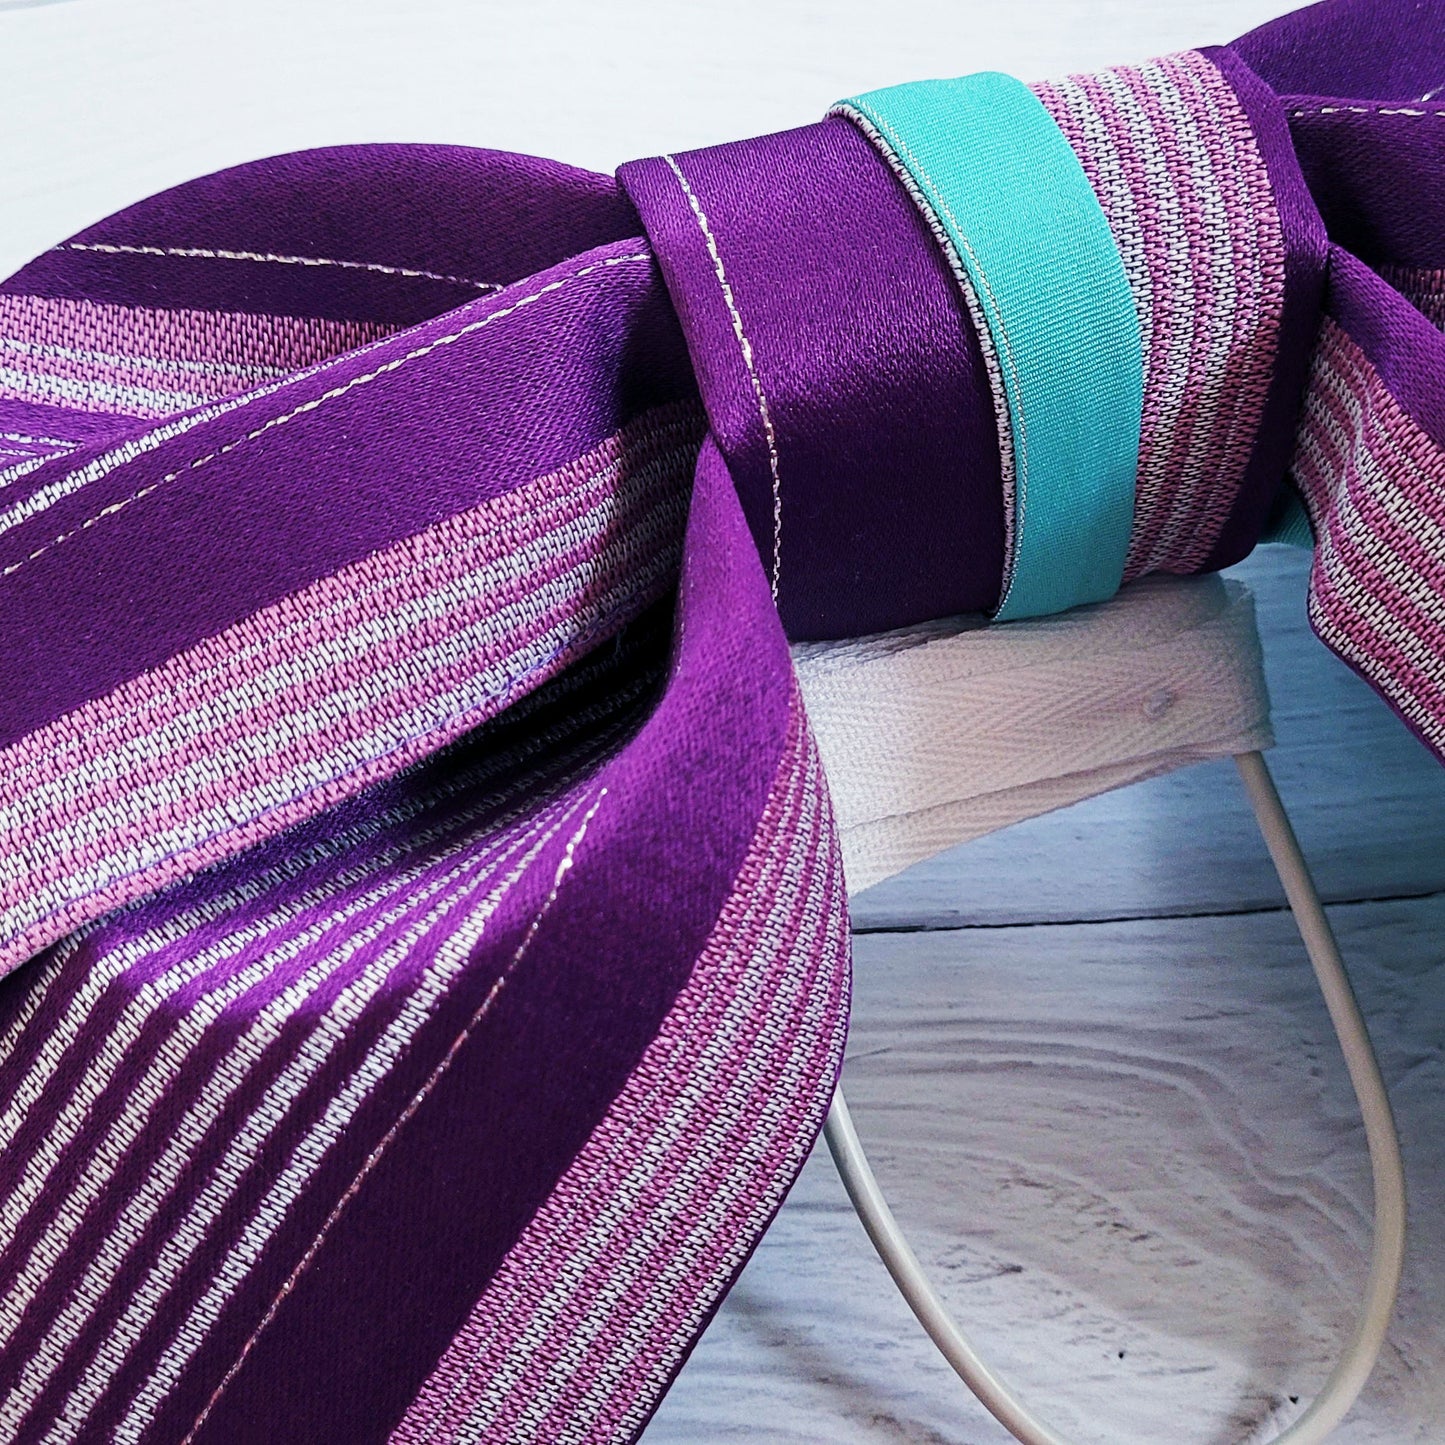 Japanese Women's Pre-Tied Obi Belt - Purple Stripes